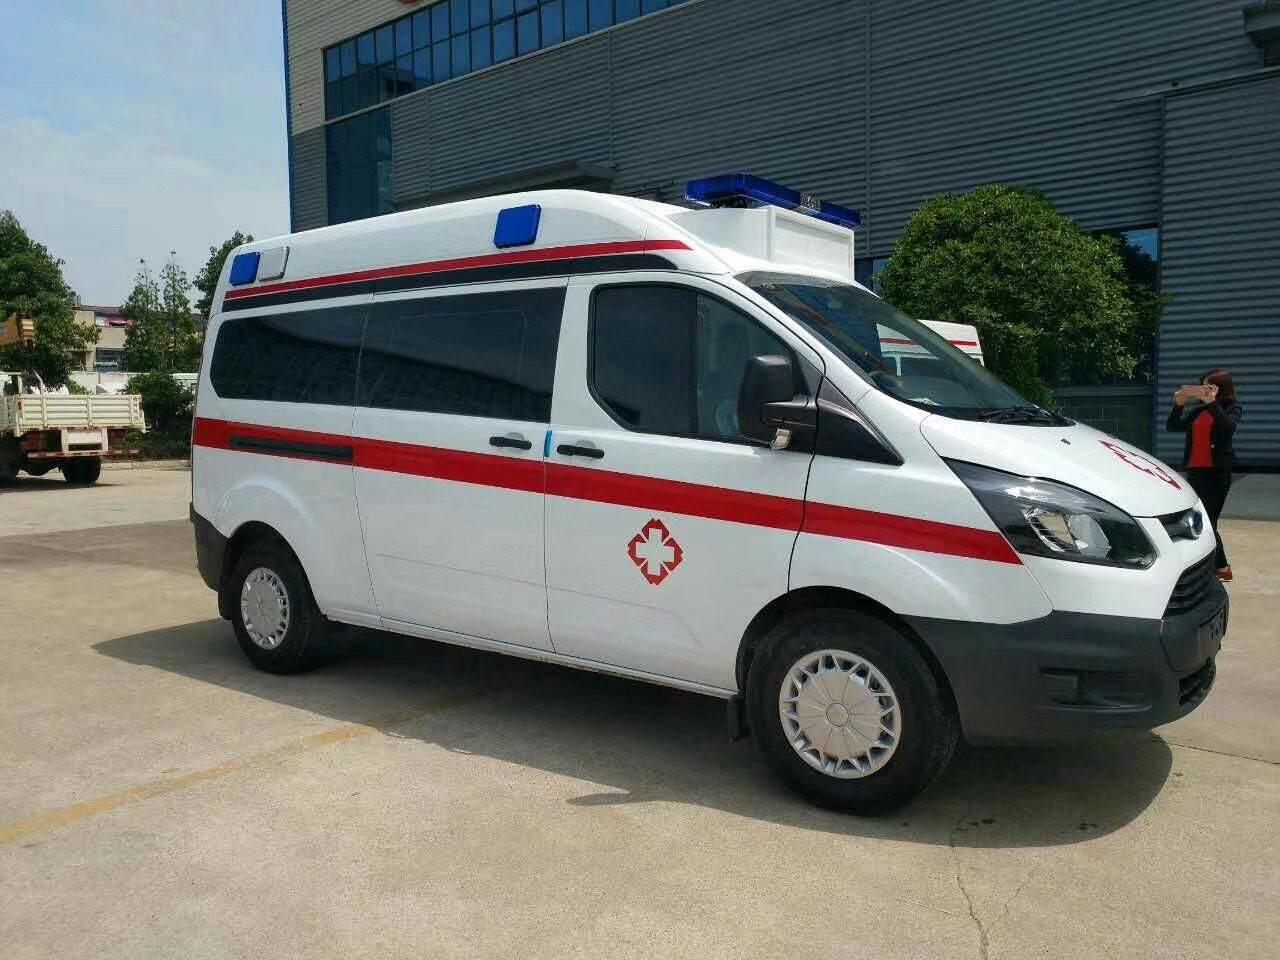 林周县出院转院救护车